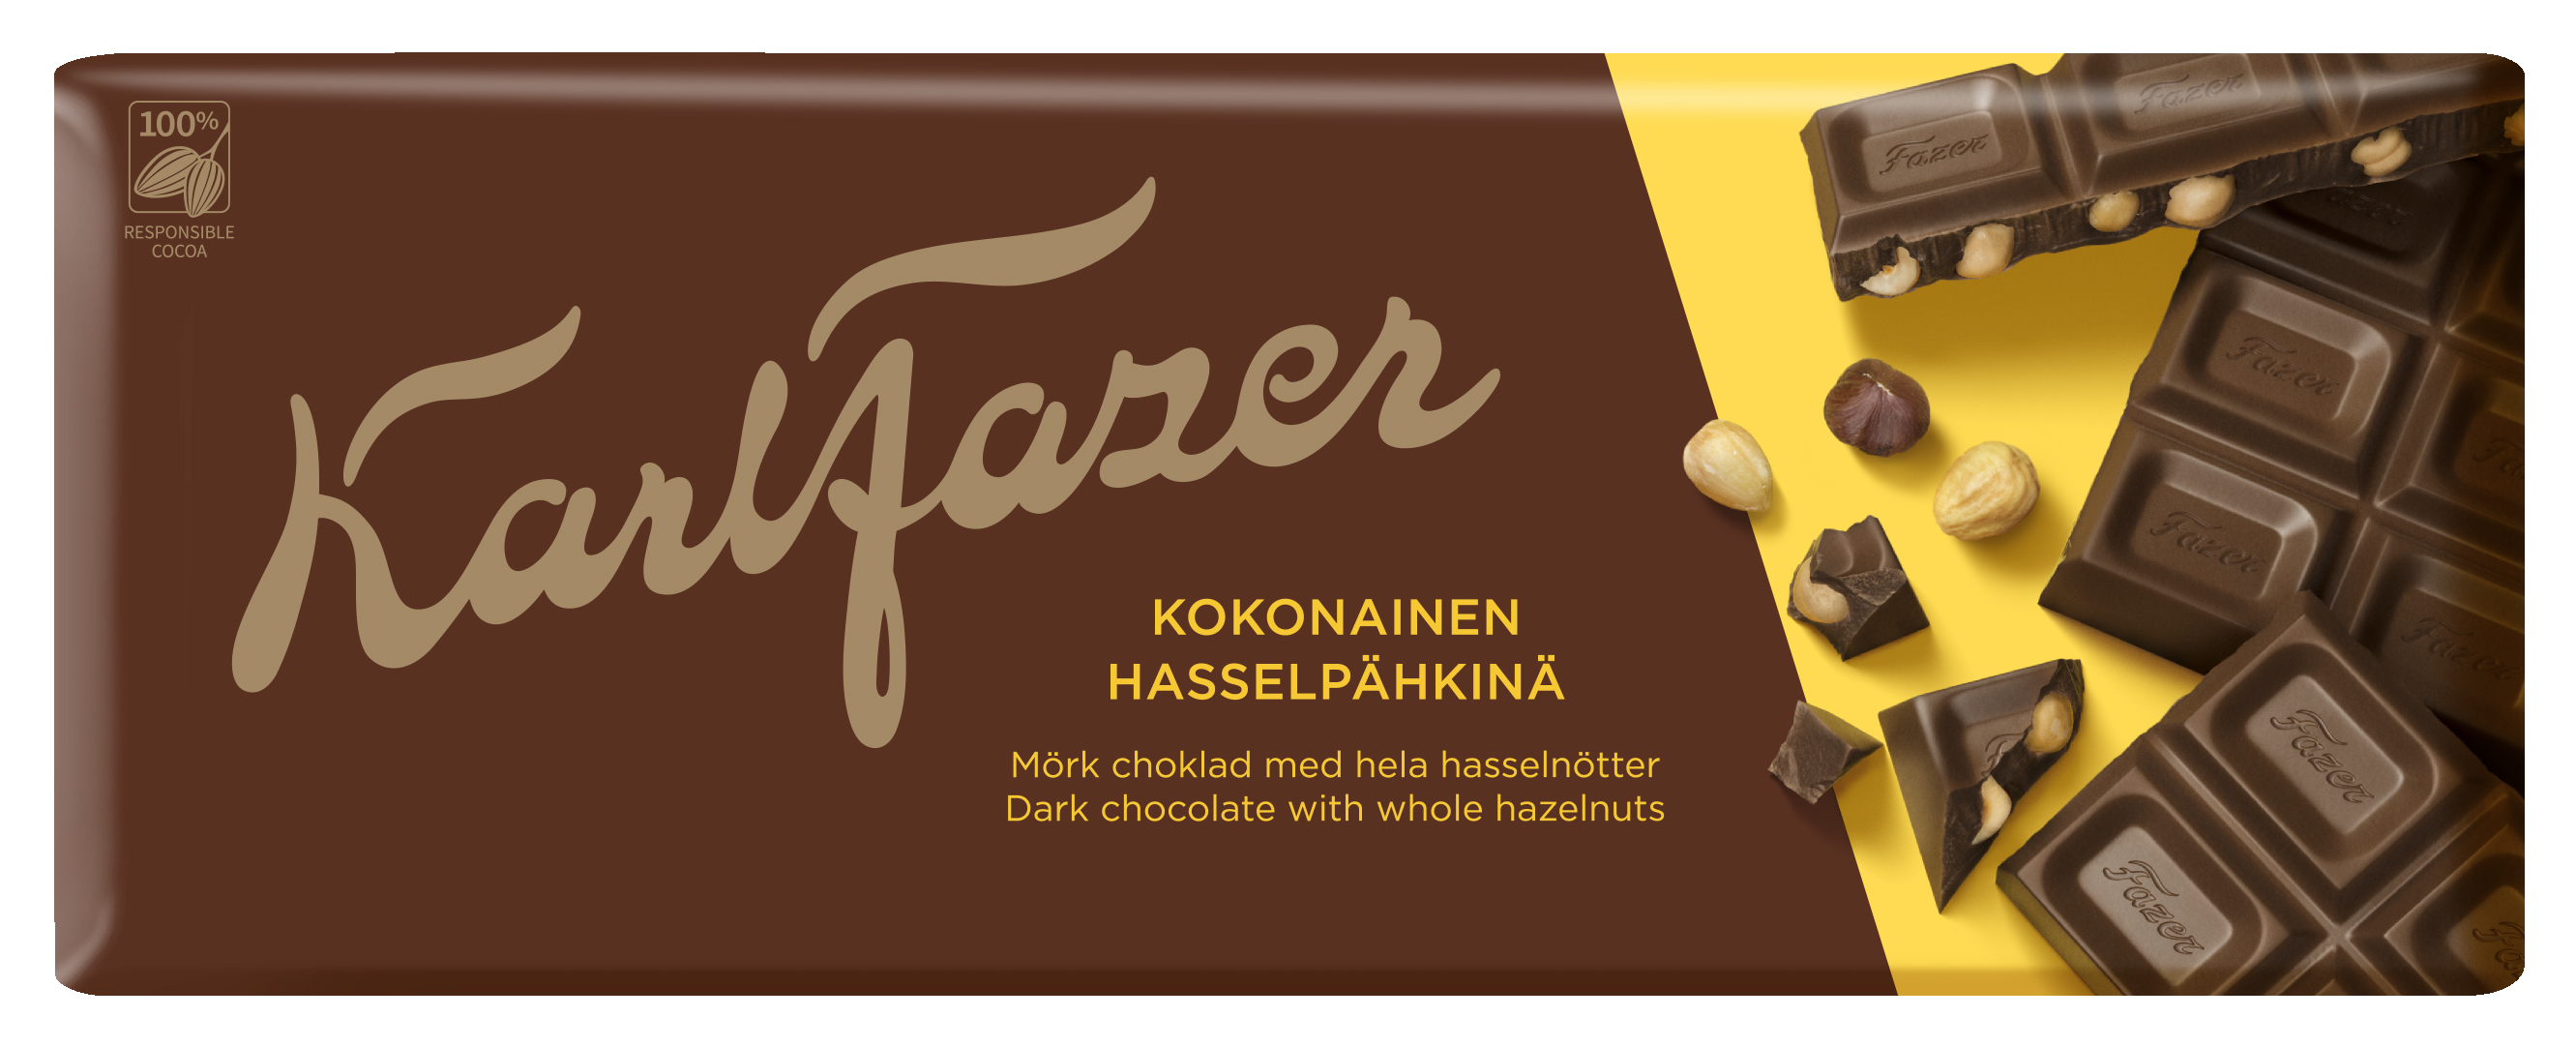 Karl Fazer Tumma suklaa kokonaiset hasselpähkinät 200g